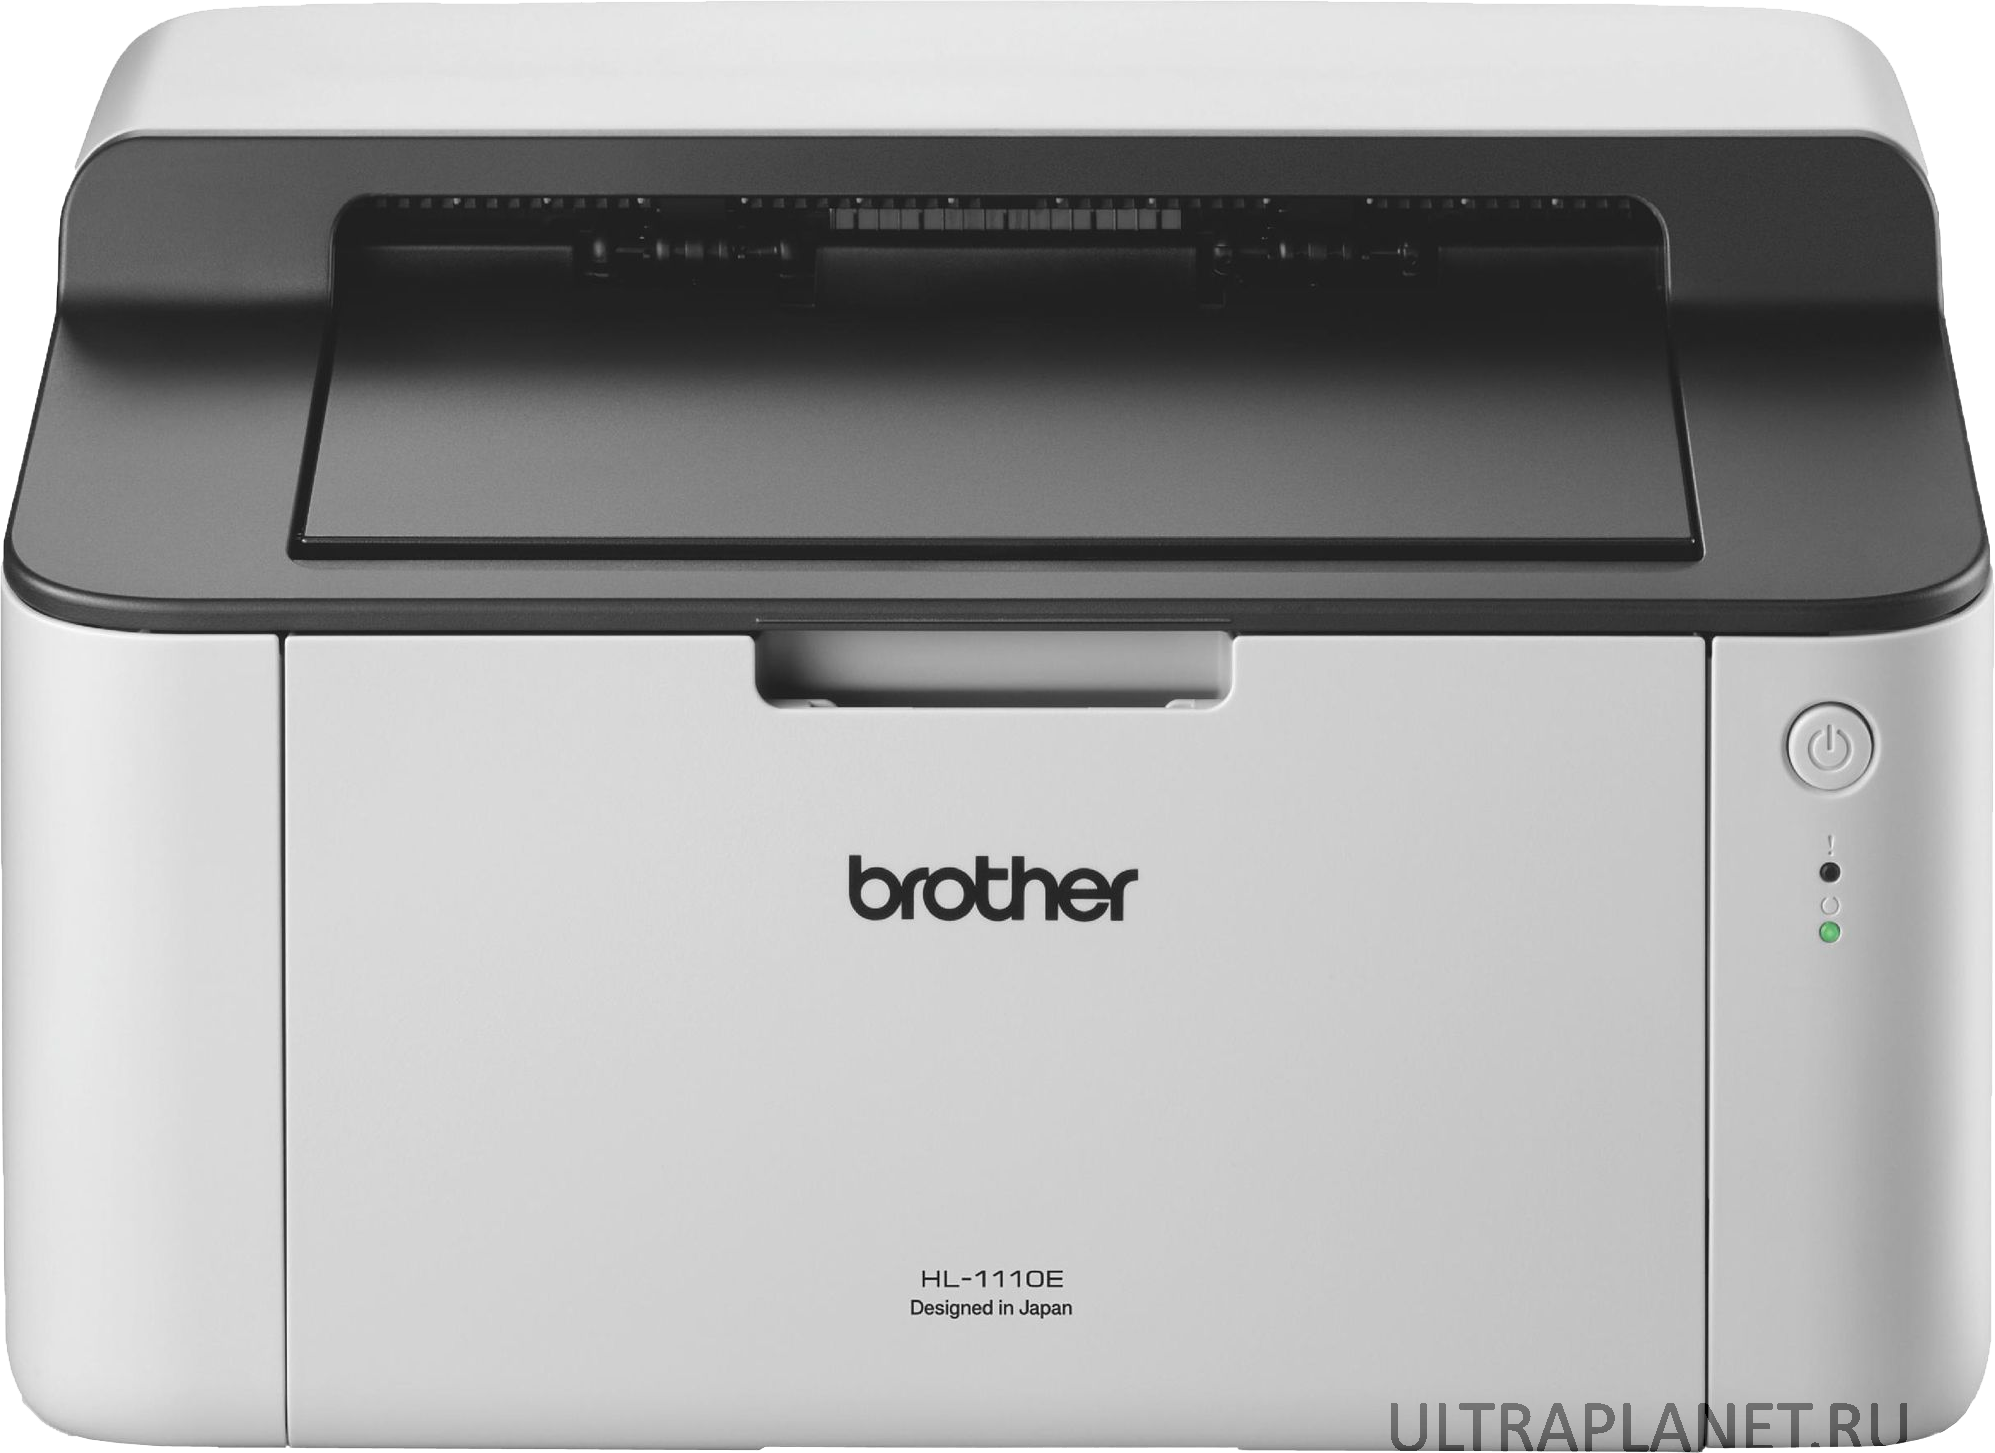 Лазерный принтер максимальное разрешение. Принтер лазерный brother 1110r. Принтер Бразер hl 1110r. Принтер лазерный brother hl-1110r (hl1110r1). Принтер brother hl 1210w.